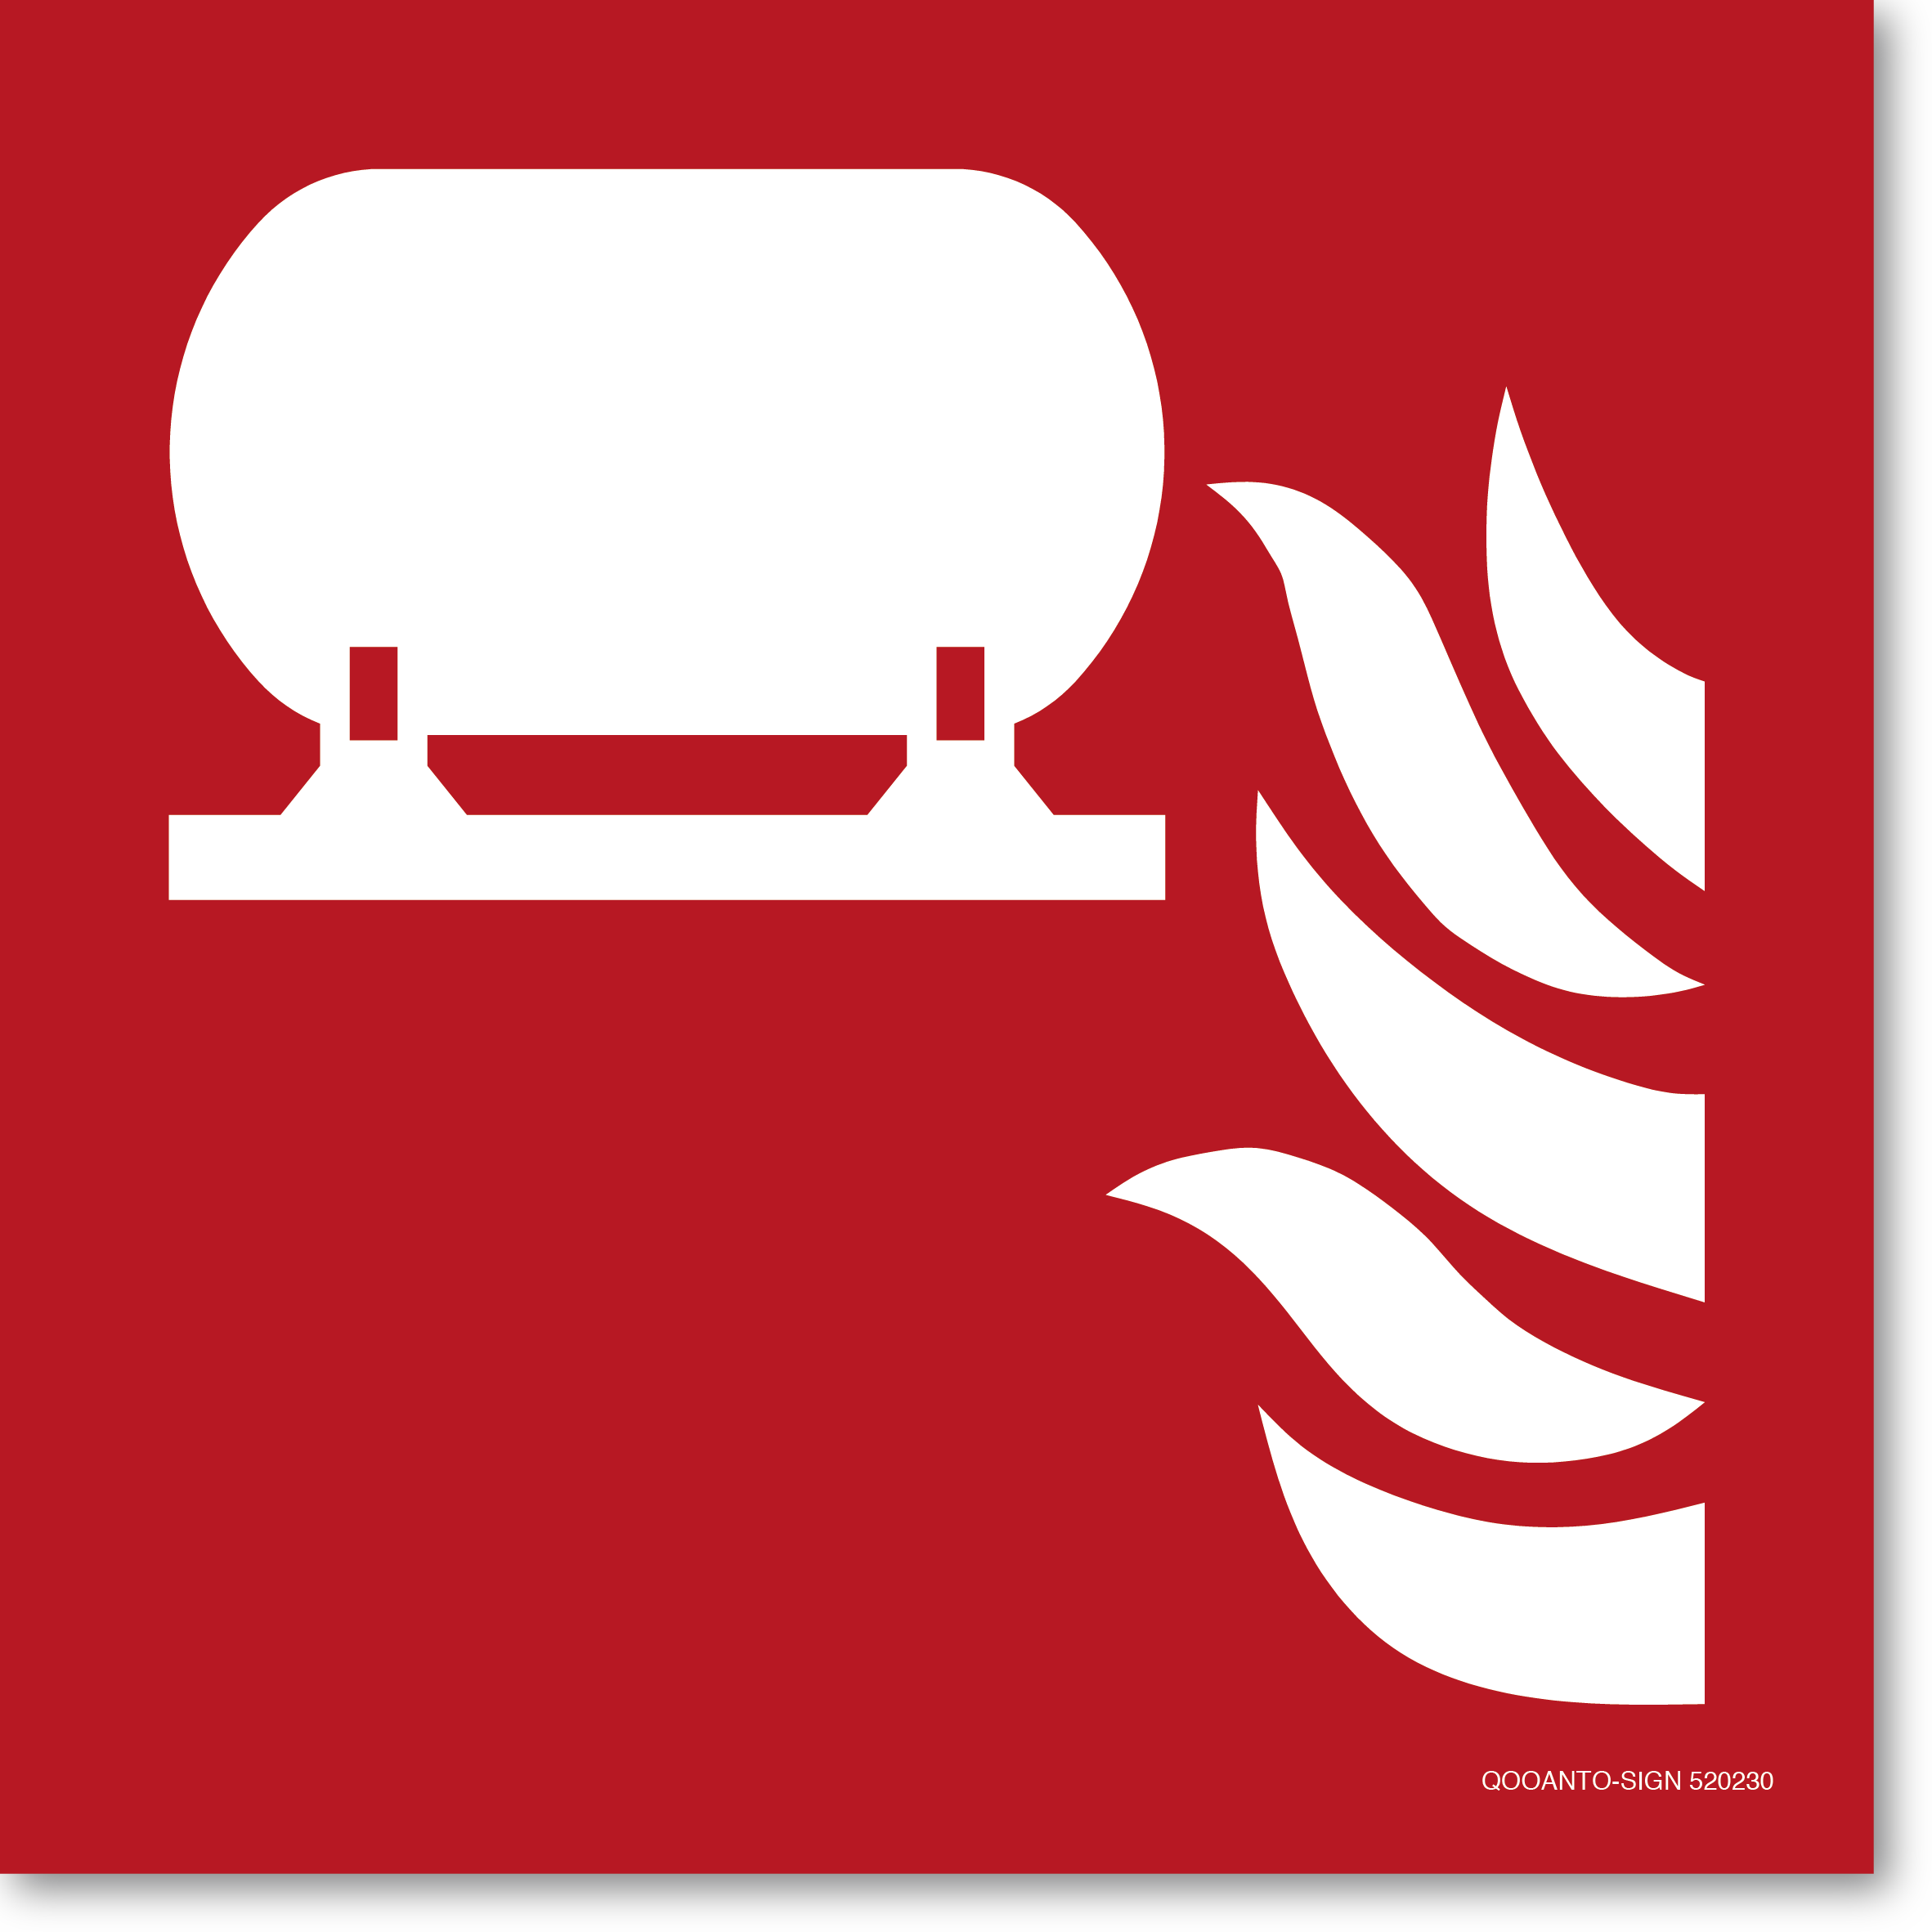 Fest eingebaute Feuerlösch-Einrichtung, Schild oder Aufkleber